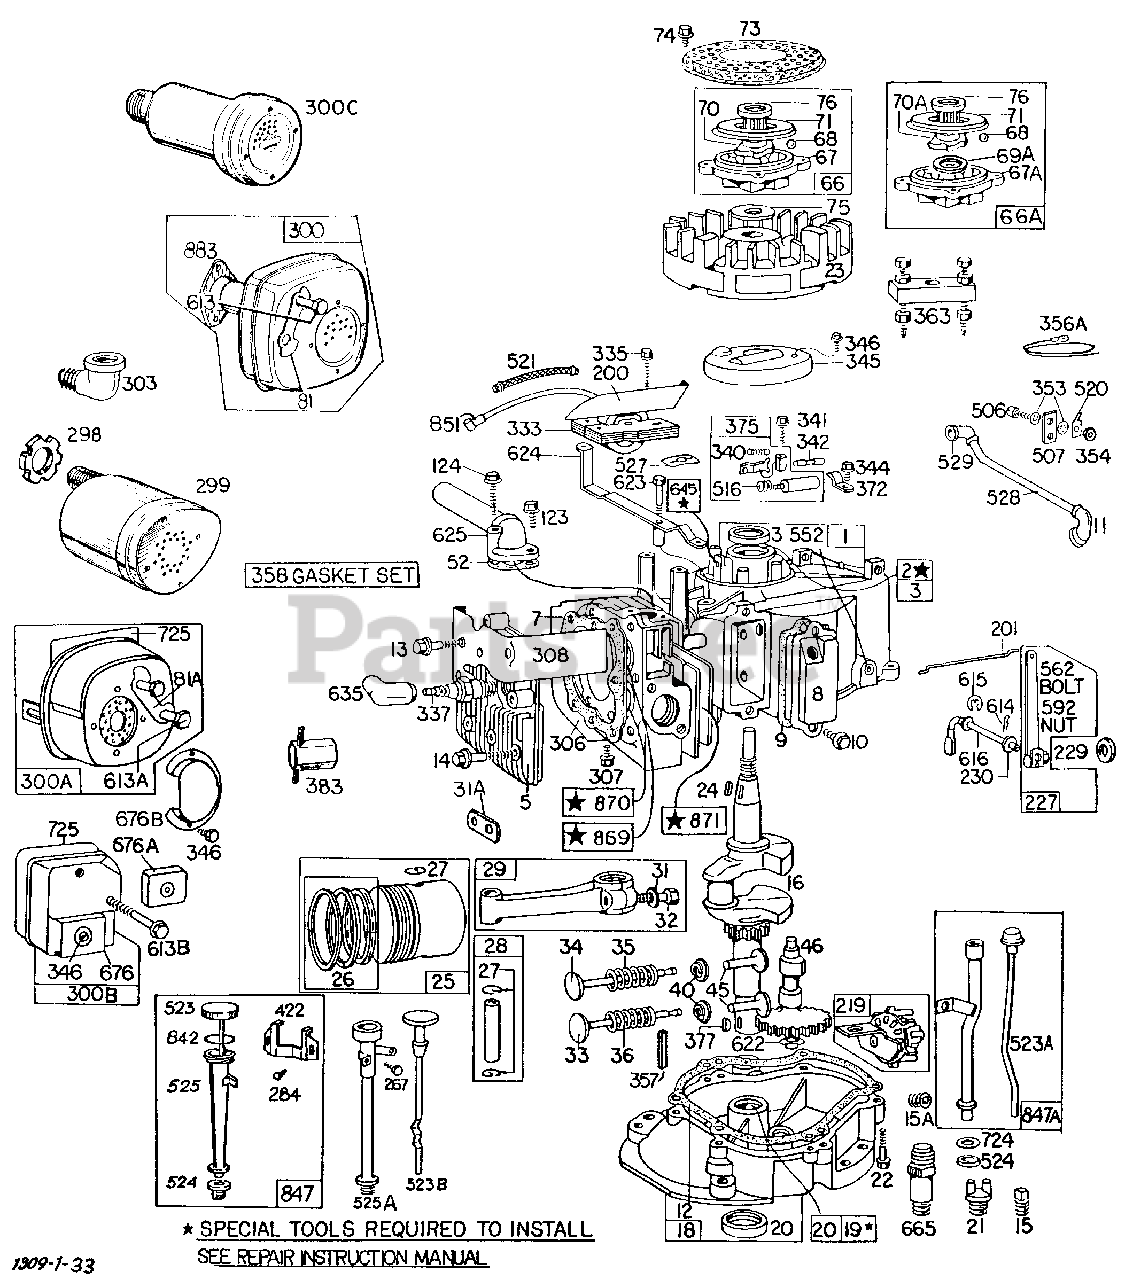 Briggs & Stratton 130902-2015-XX - Briggs & Stratton Vertical Engine ...